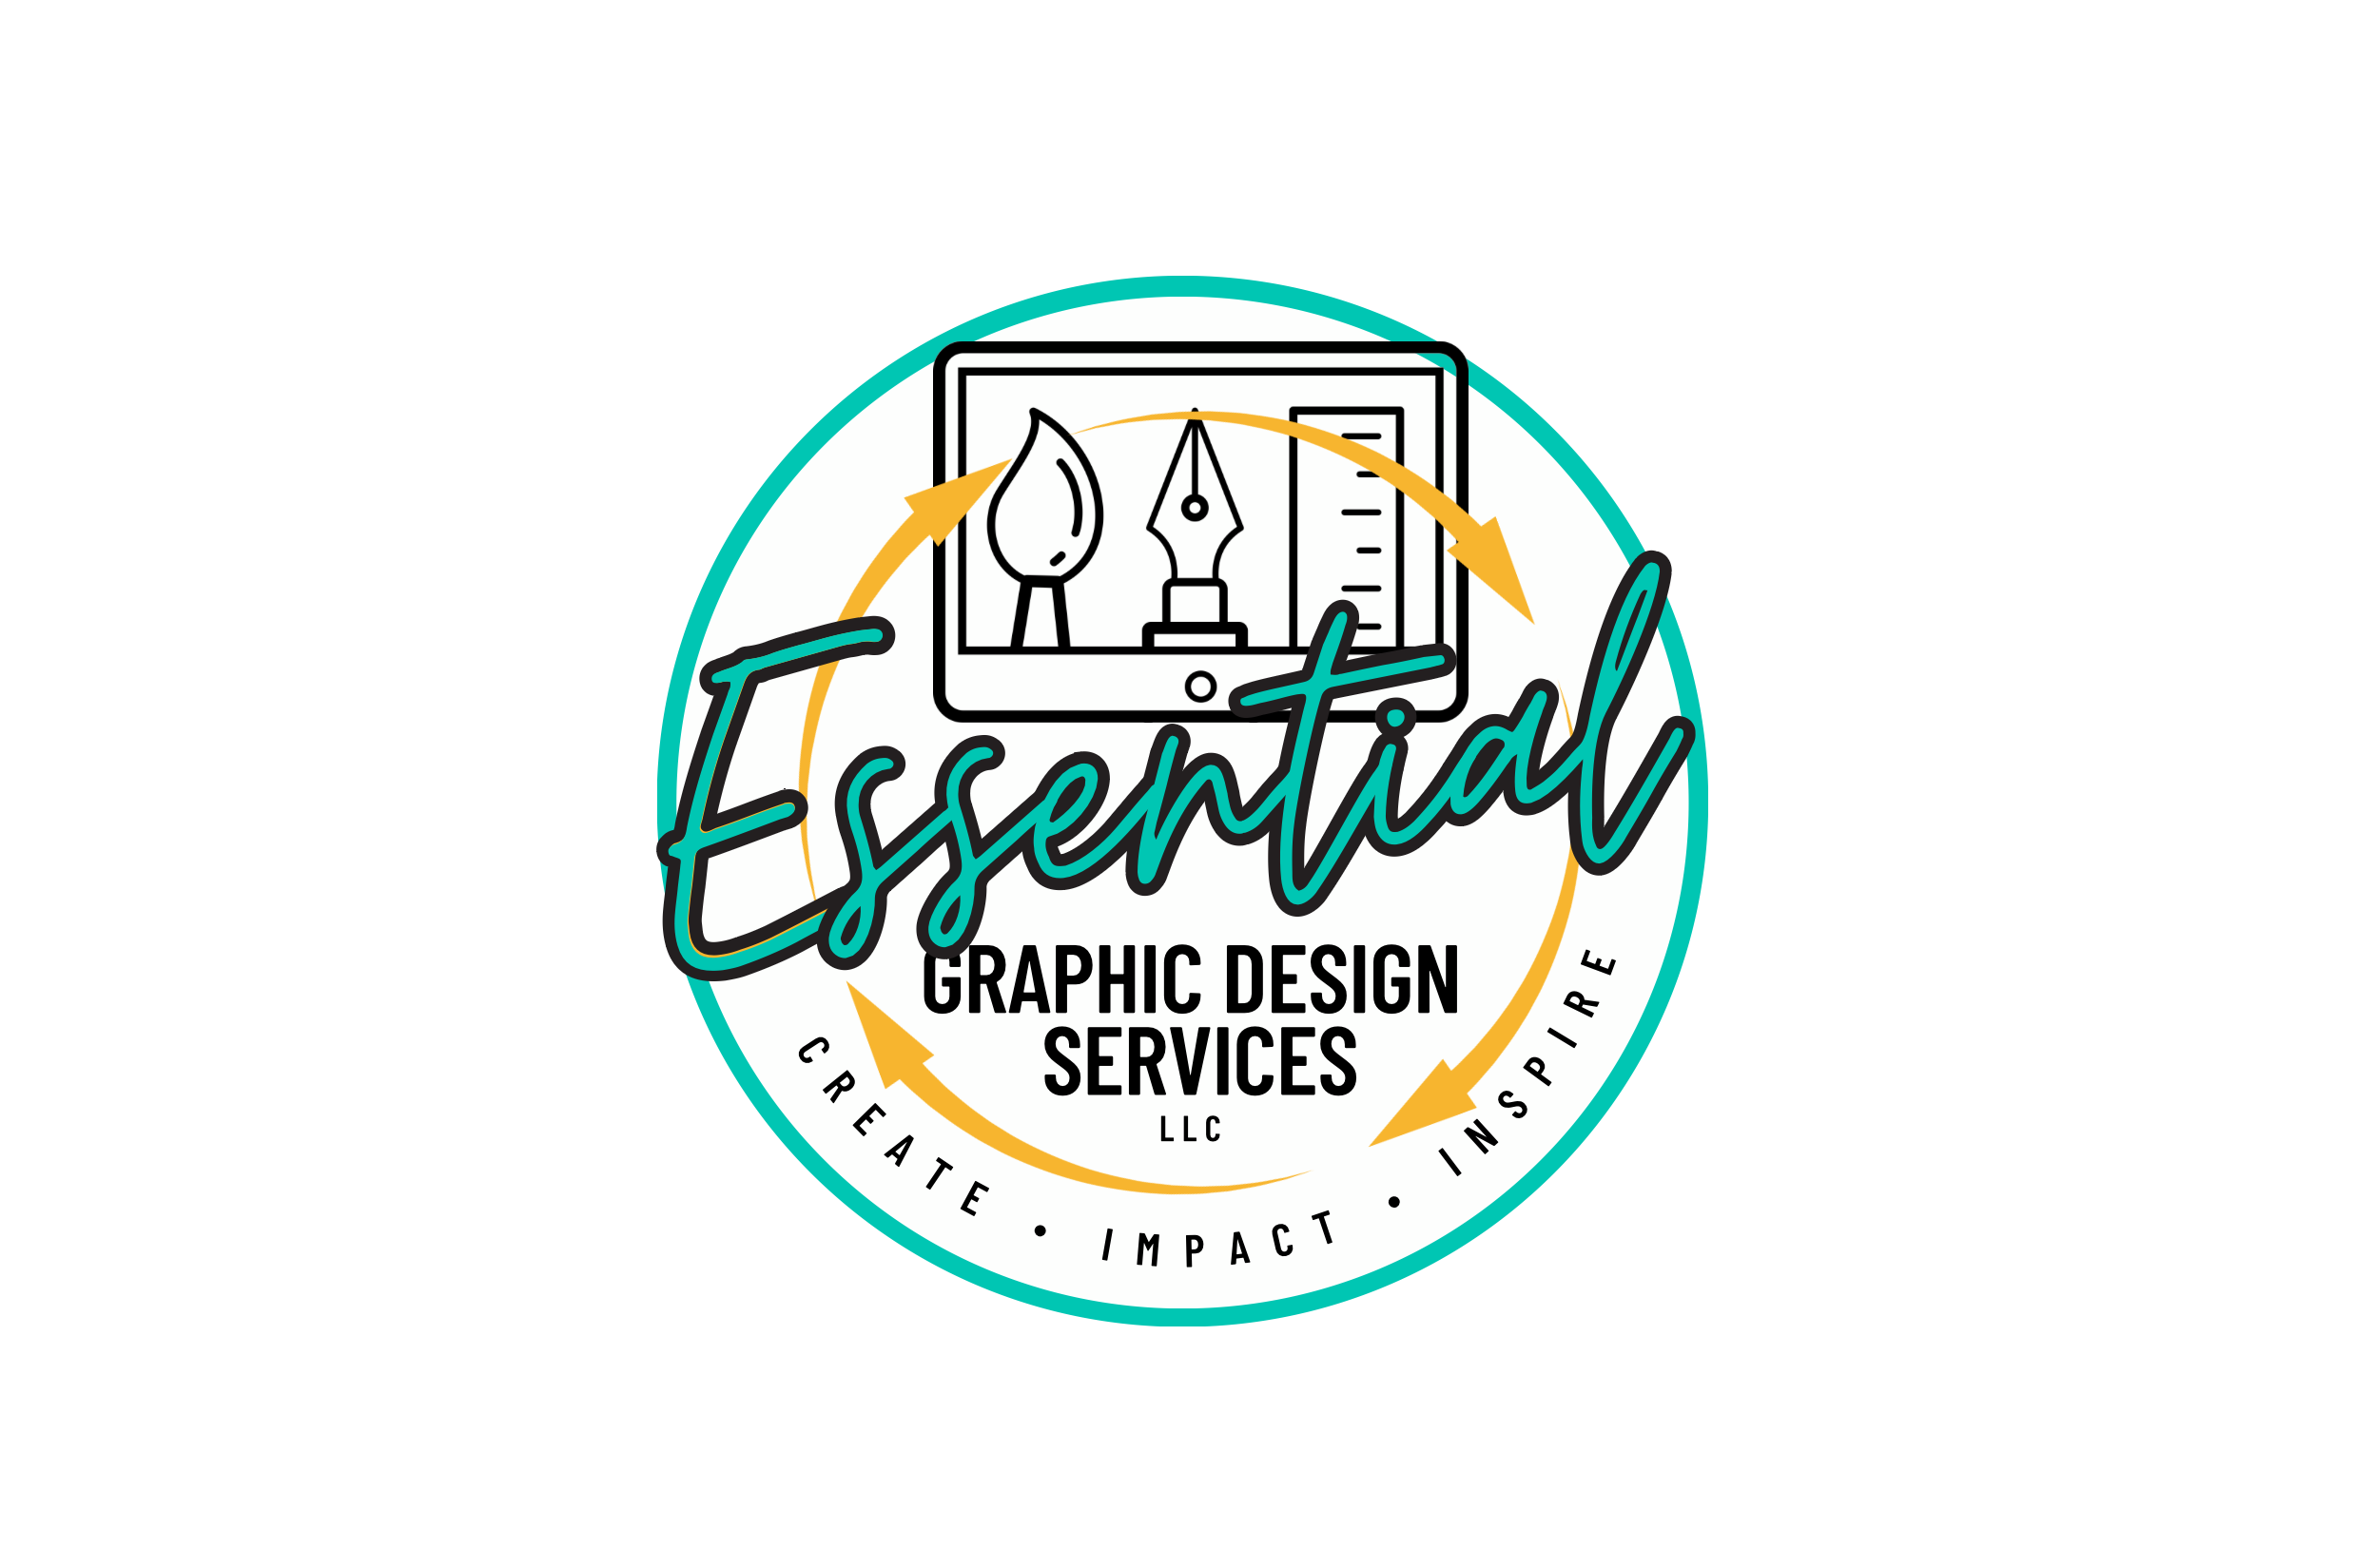 Essential Graphic Design Services, LLC